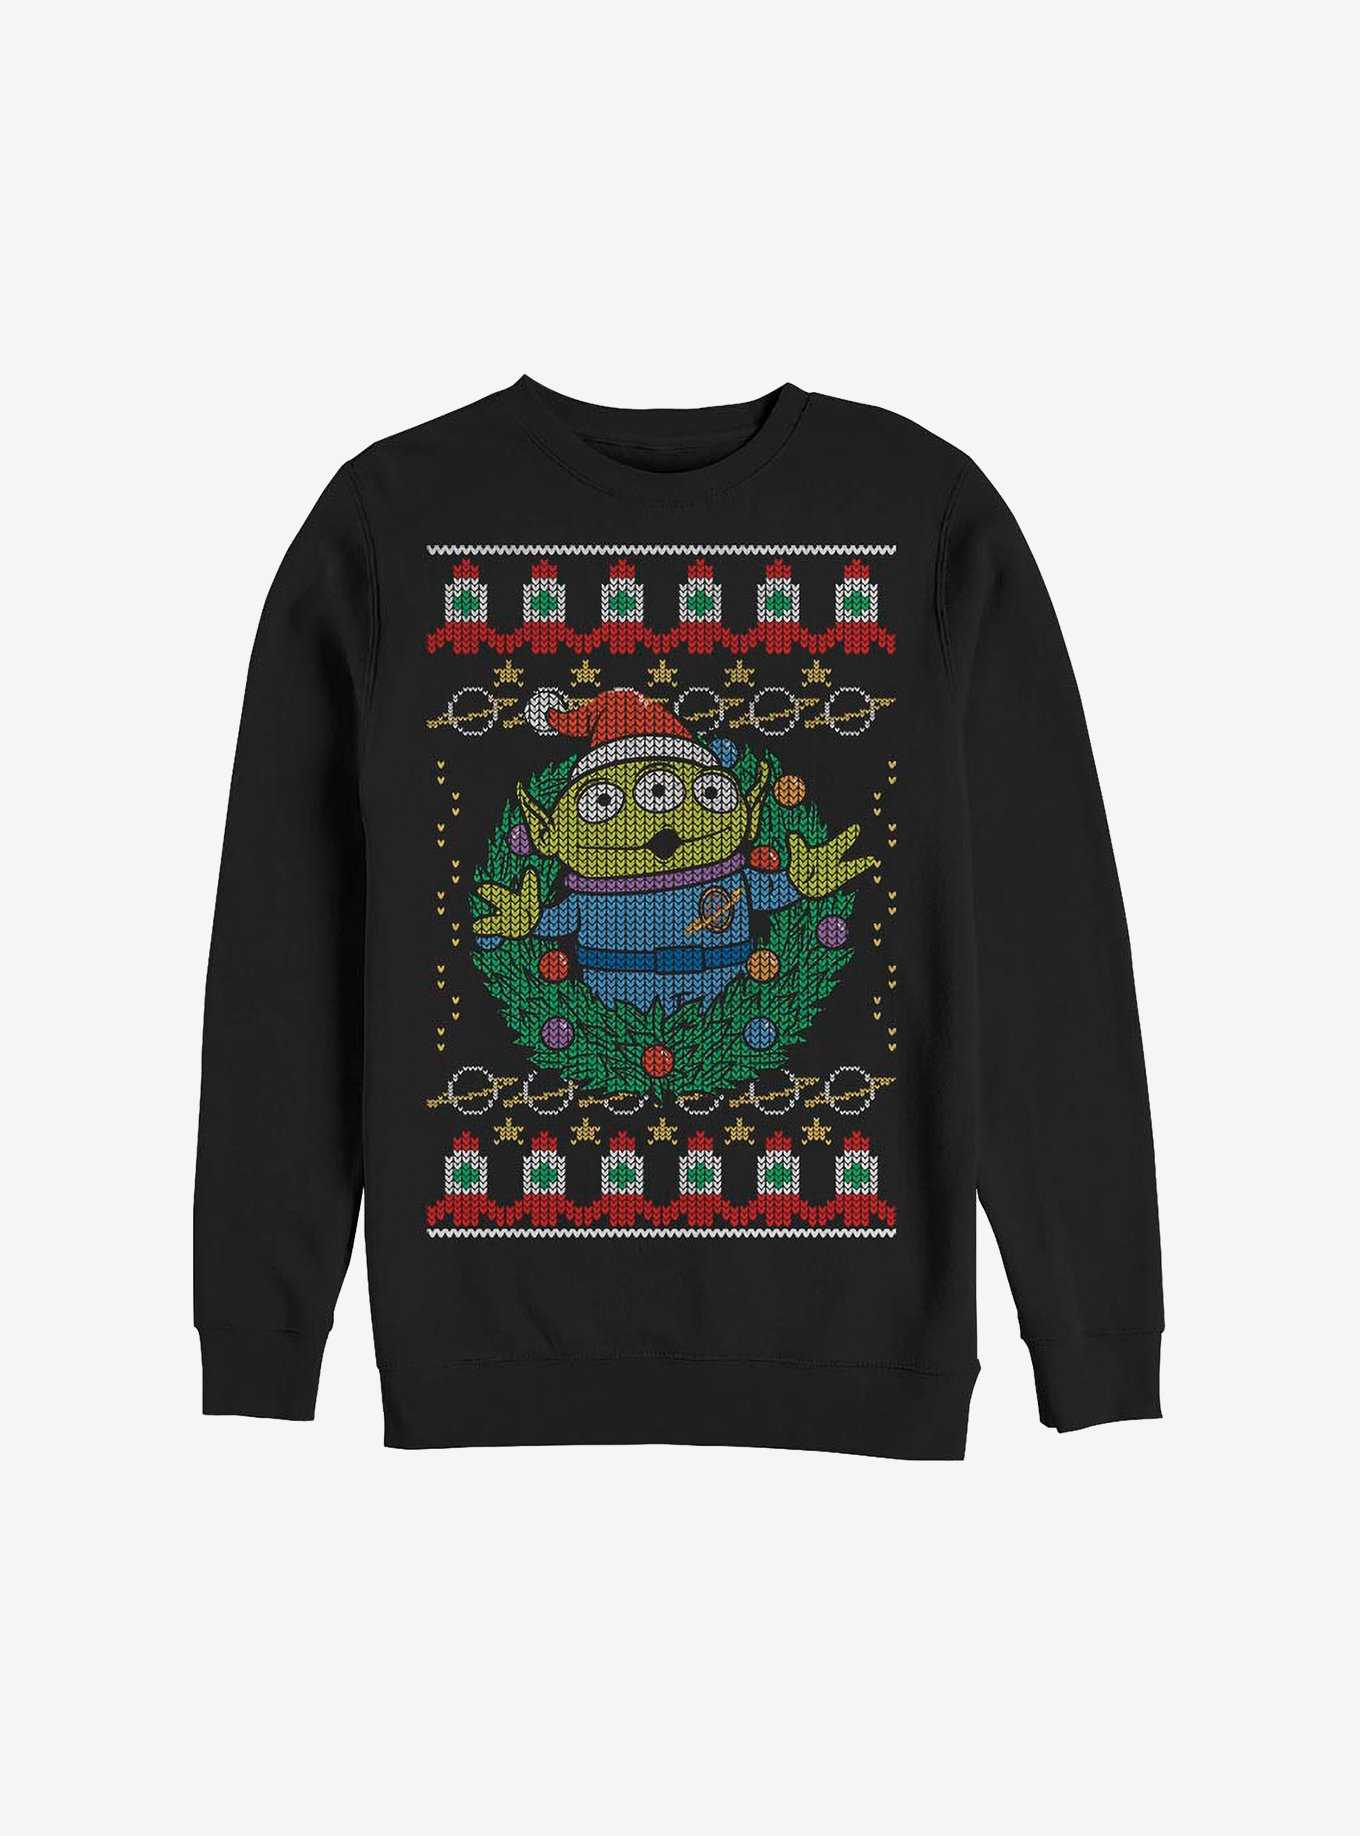 Disney Pixar Toy Story Greetings Ugly Christmas Sweater Sweatshirt, , hi-res